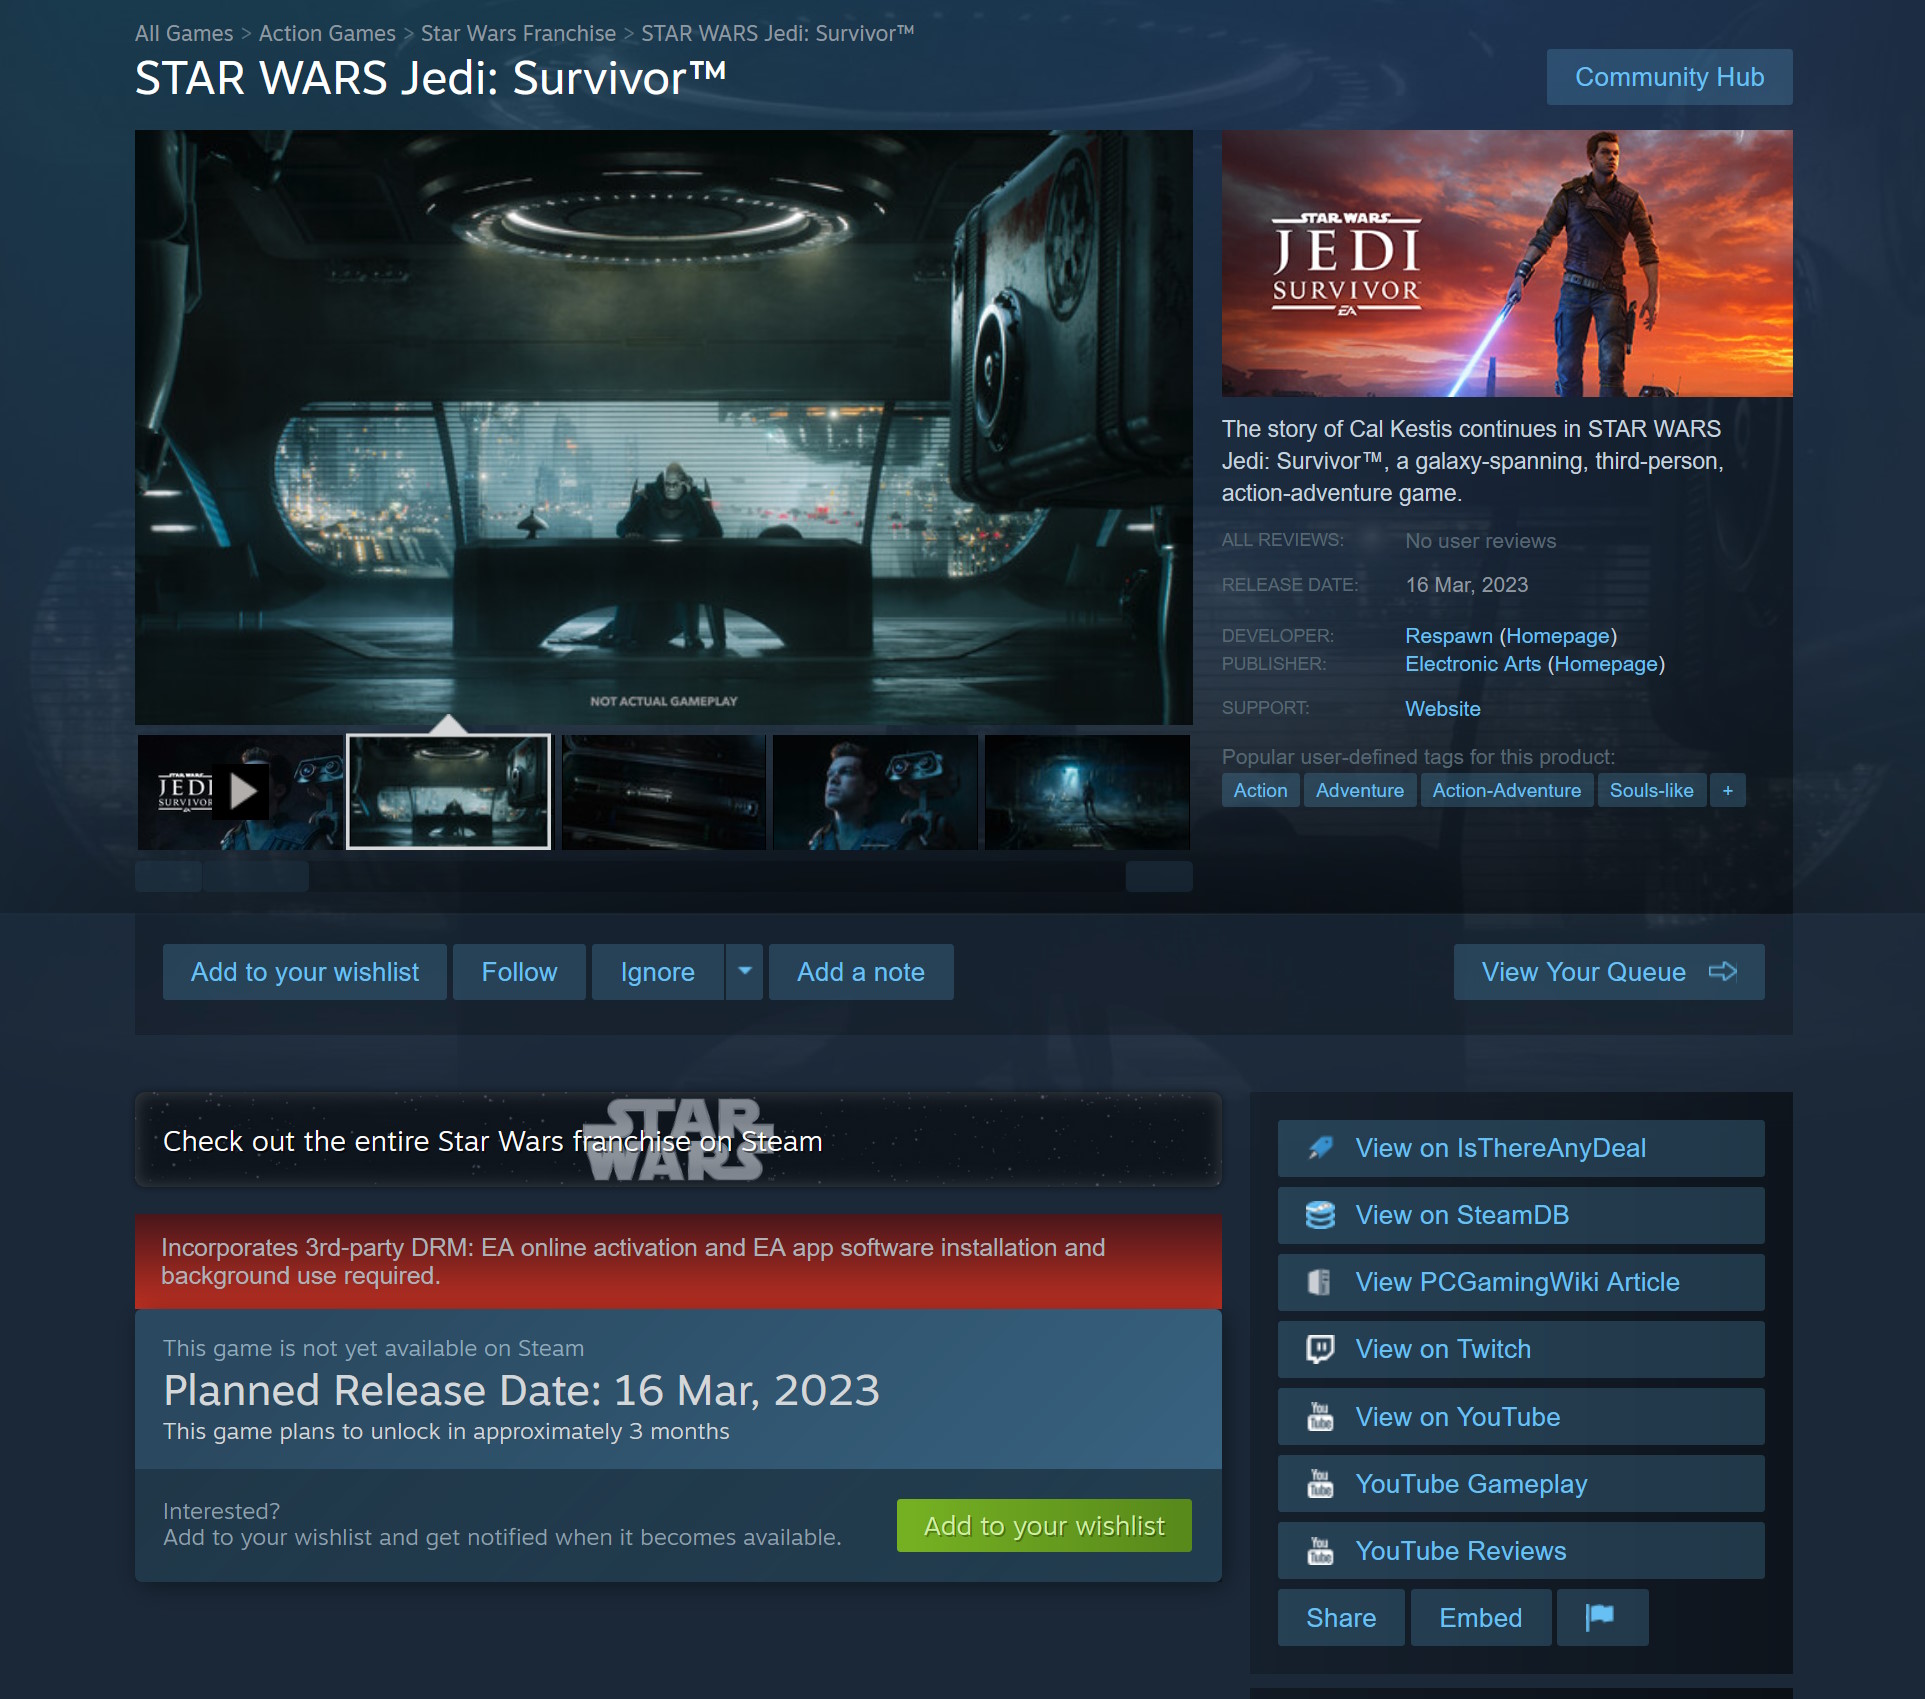 Star Wars Jedi: Survivor Steam page